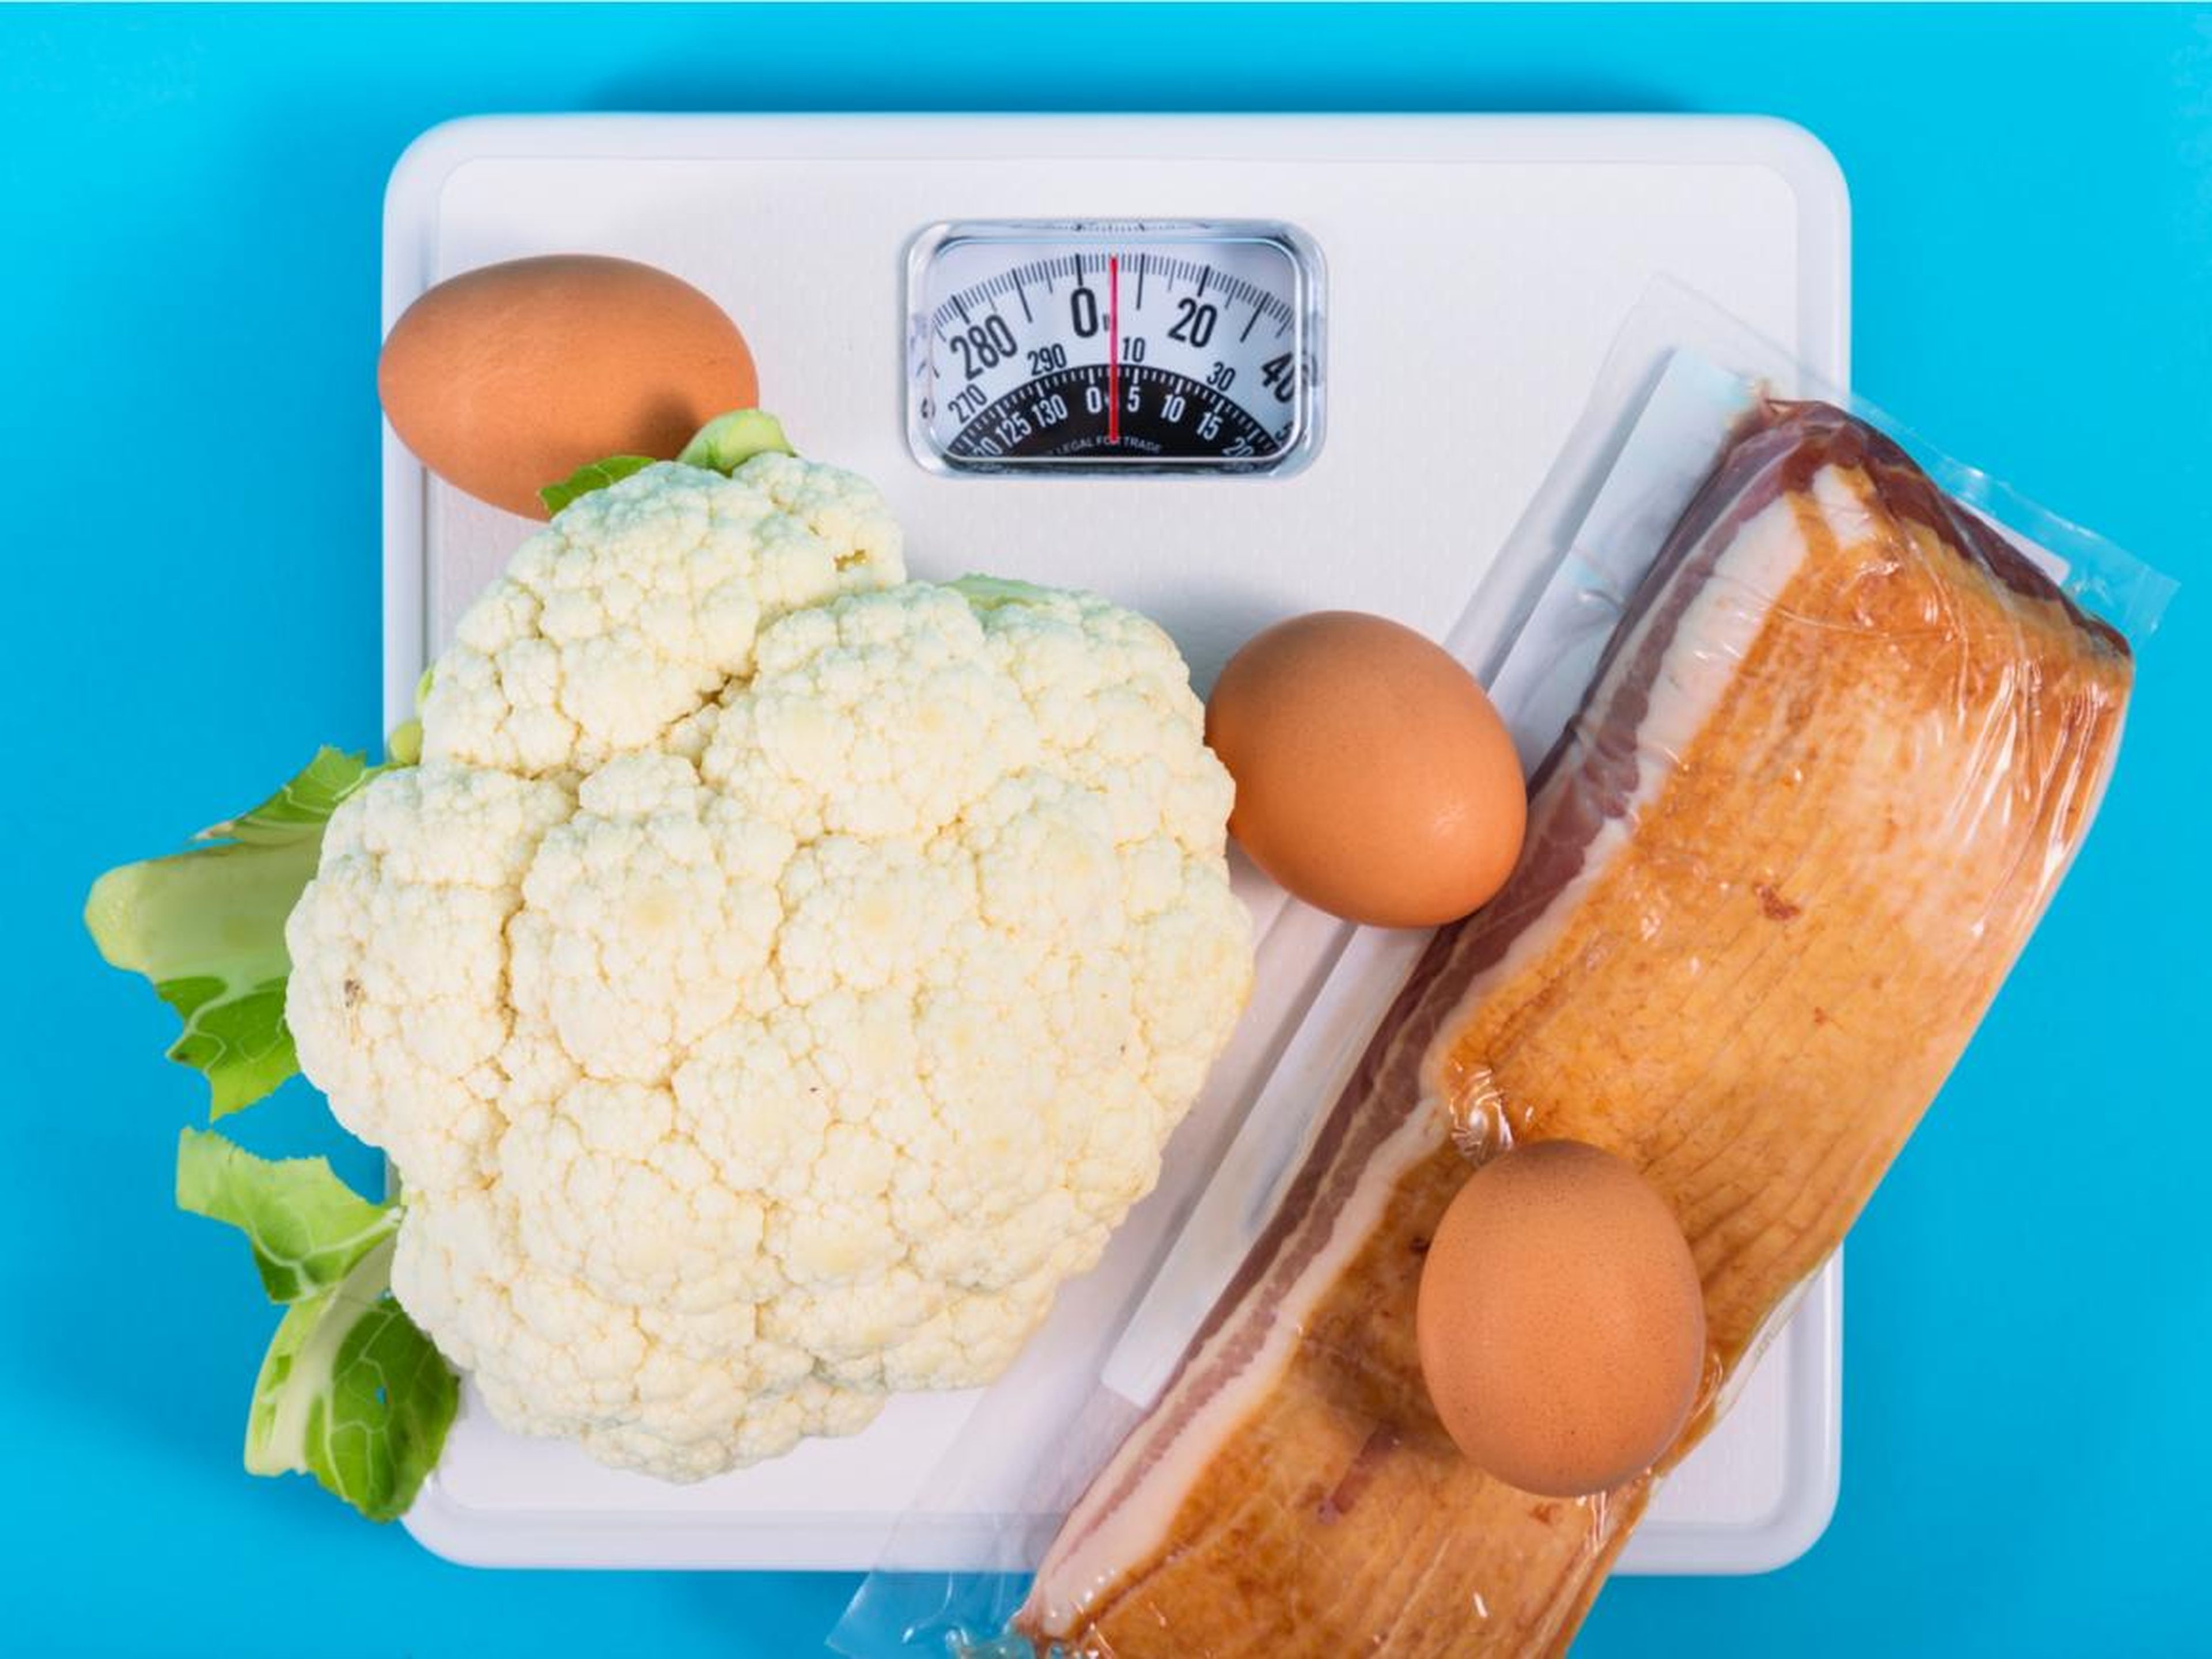 Mito: La dieta cetogénica ayuda a perder peso a largo plazo.